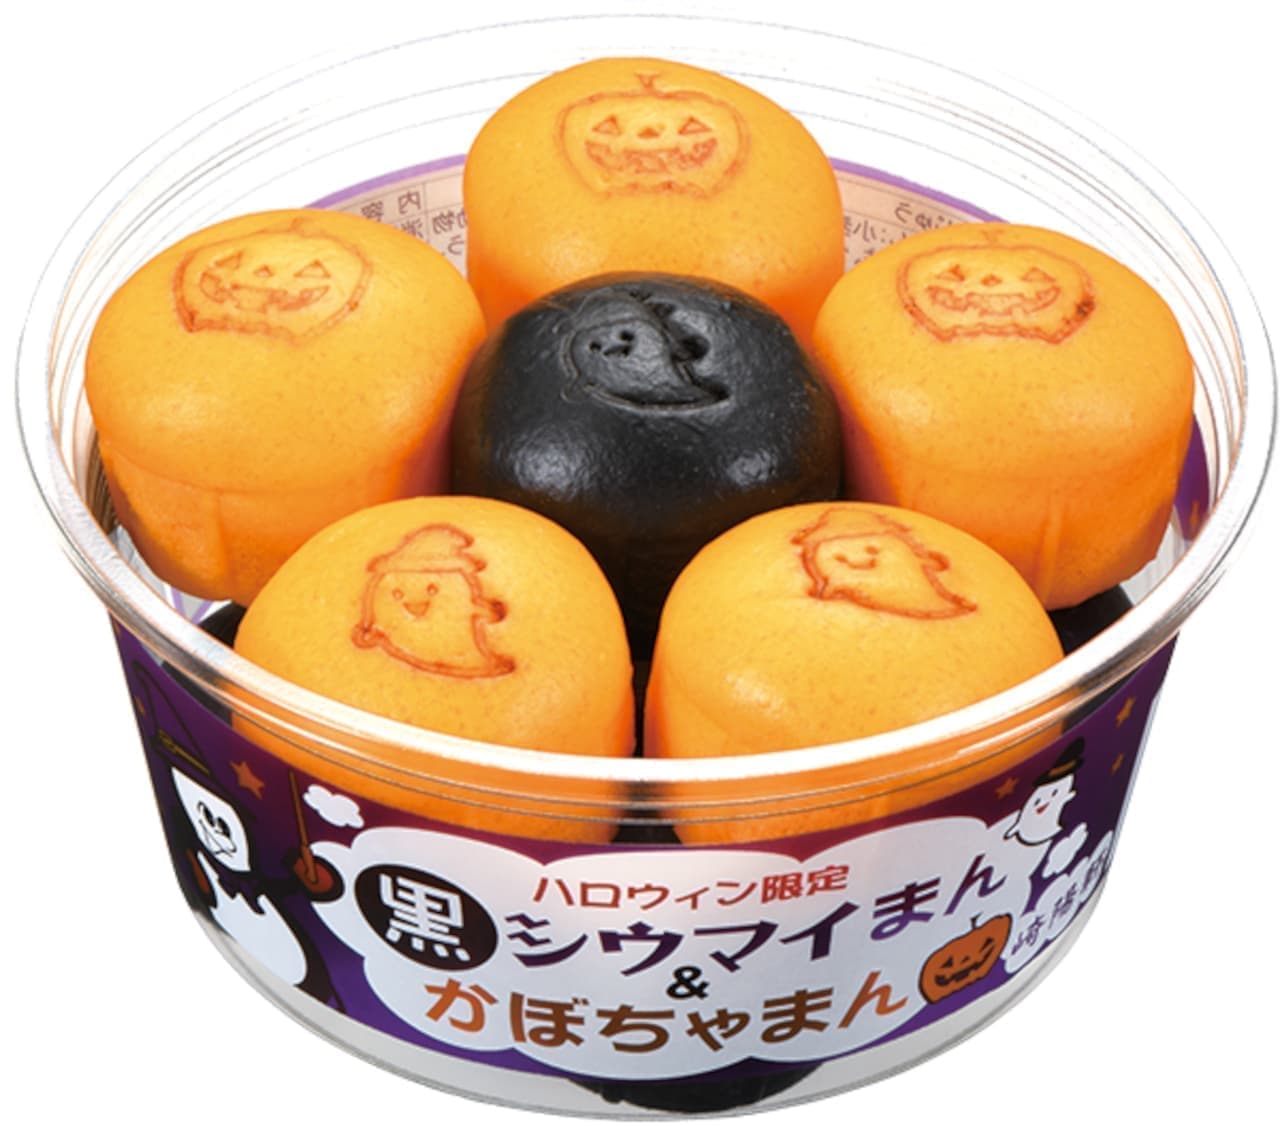 Saki Yoken "Halloween Limited Kuro Shiomai Man & Kabocha Man" and "Halloween Limited Kuro Fried Rice Bento".